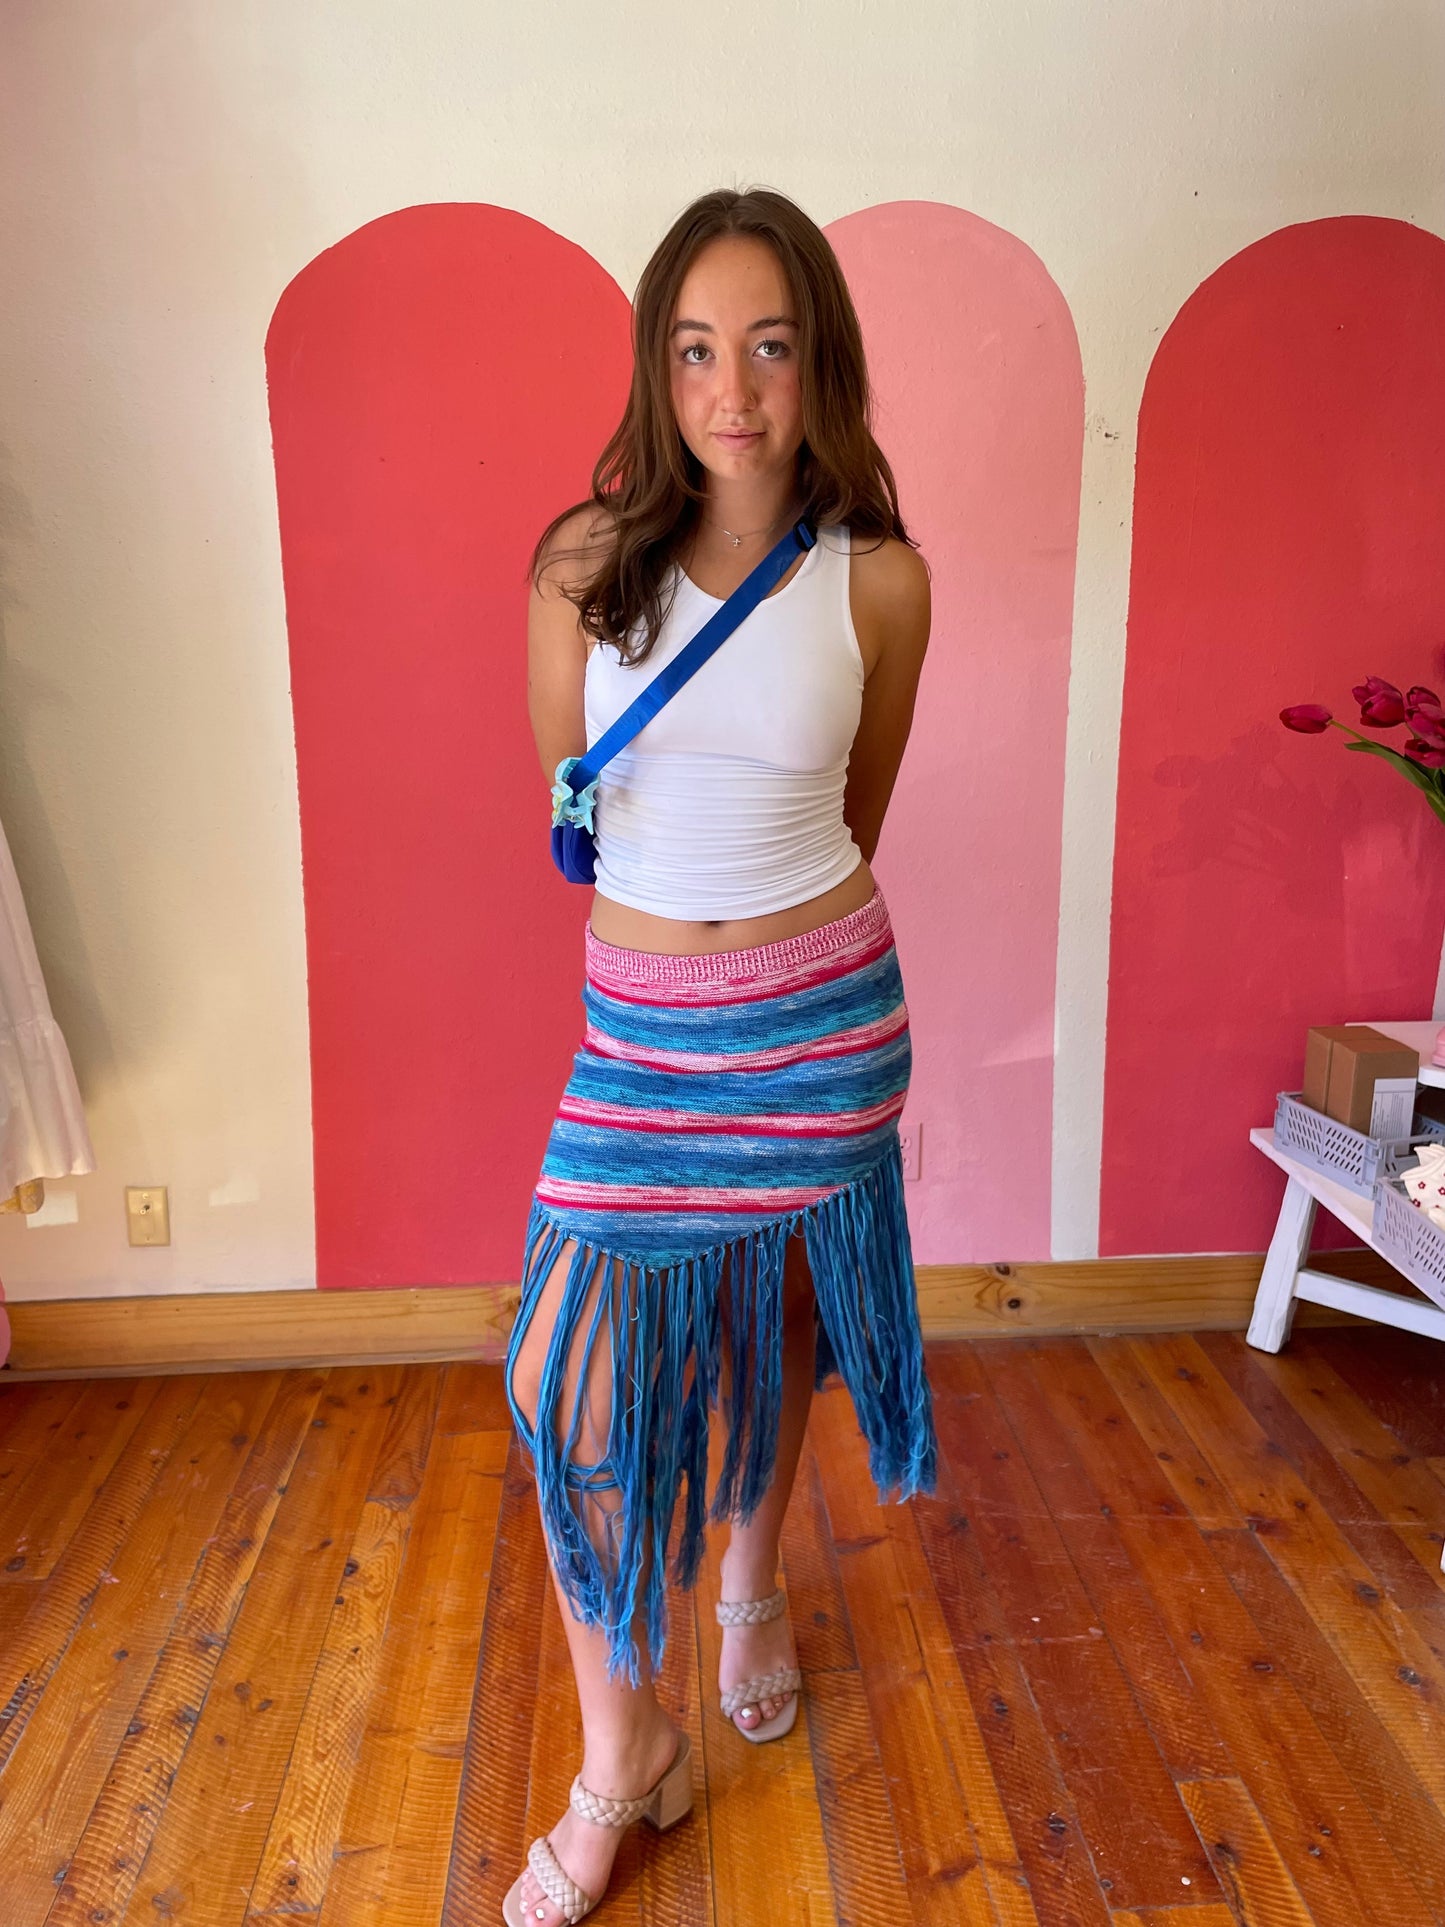 Ariel Skirt